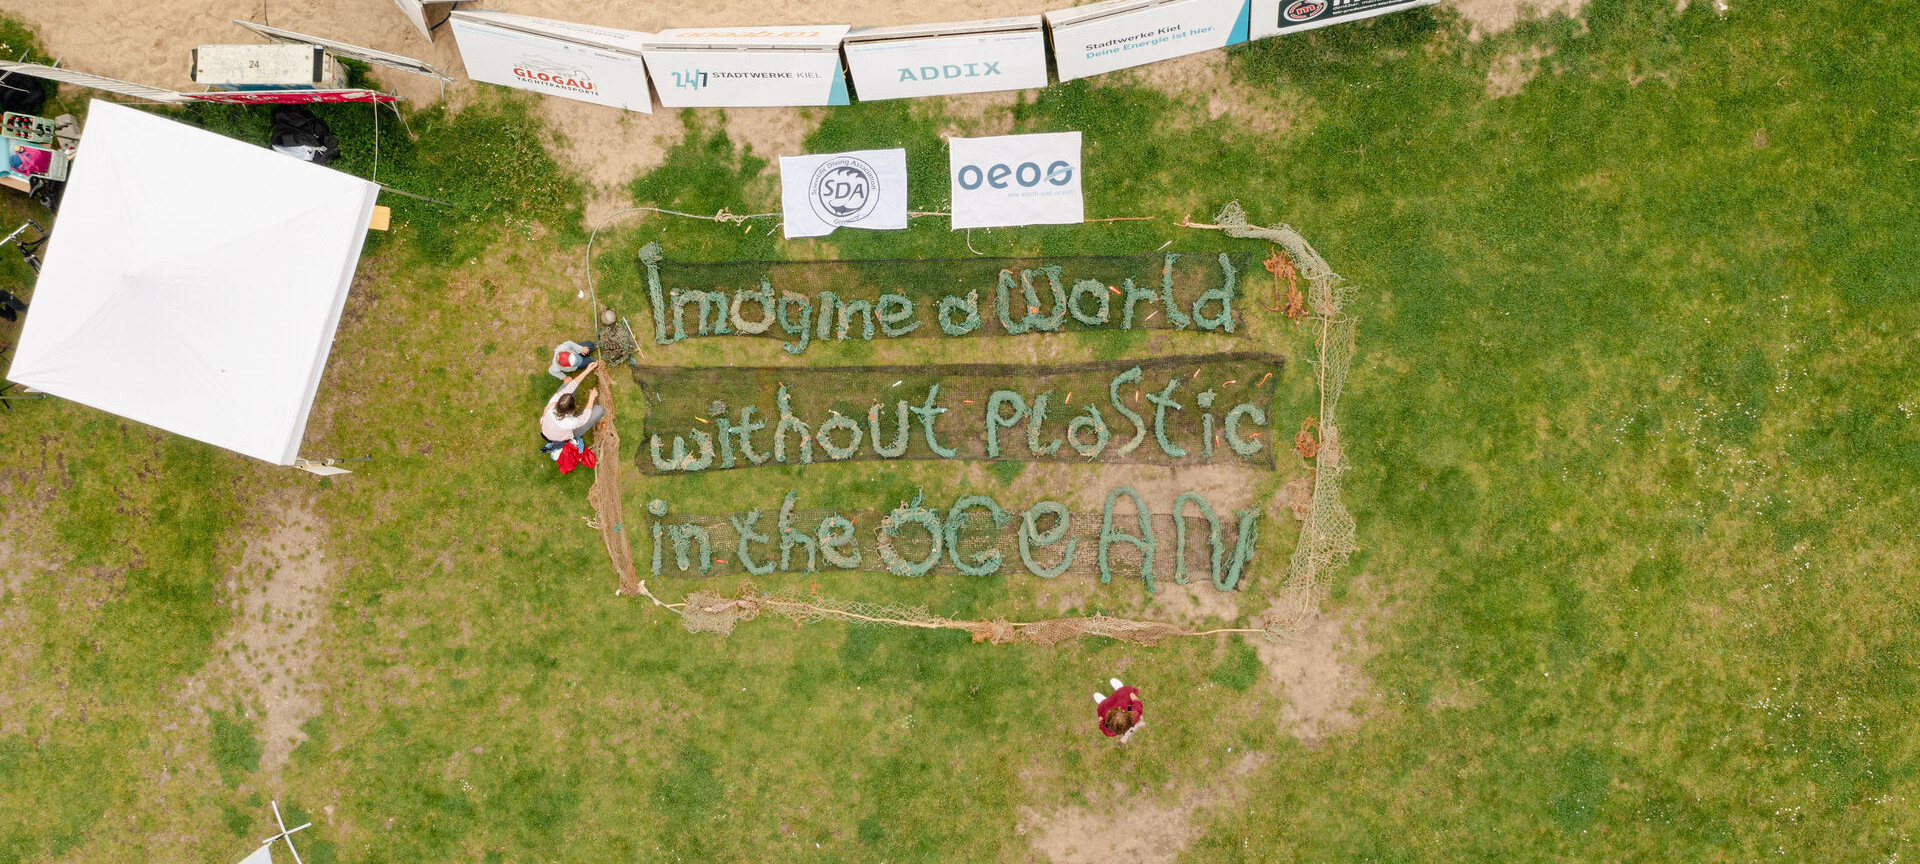 Meeresschutz und Nachhaltigkeit: Stell dir eine Welt ohne Plastik im Ozean vor